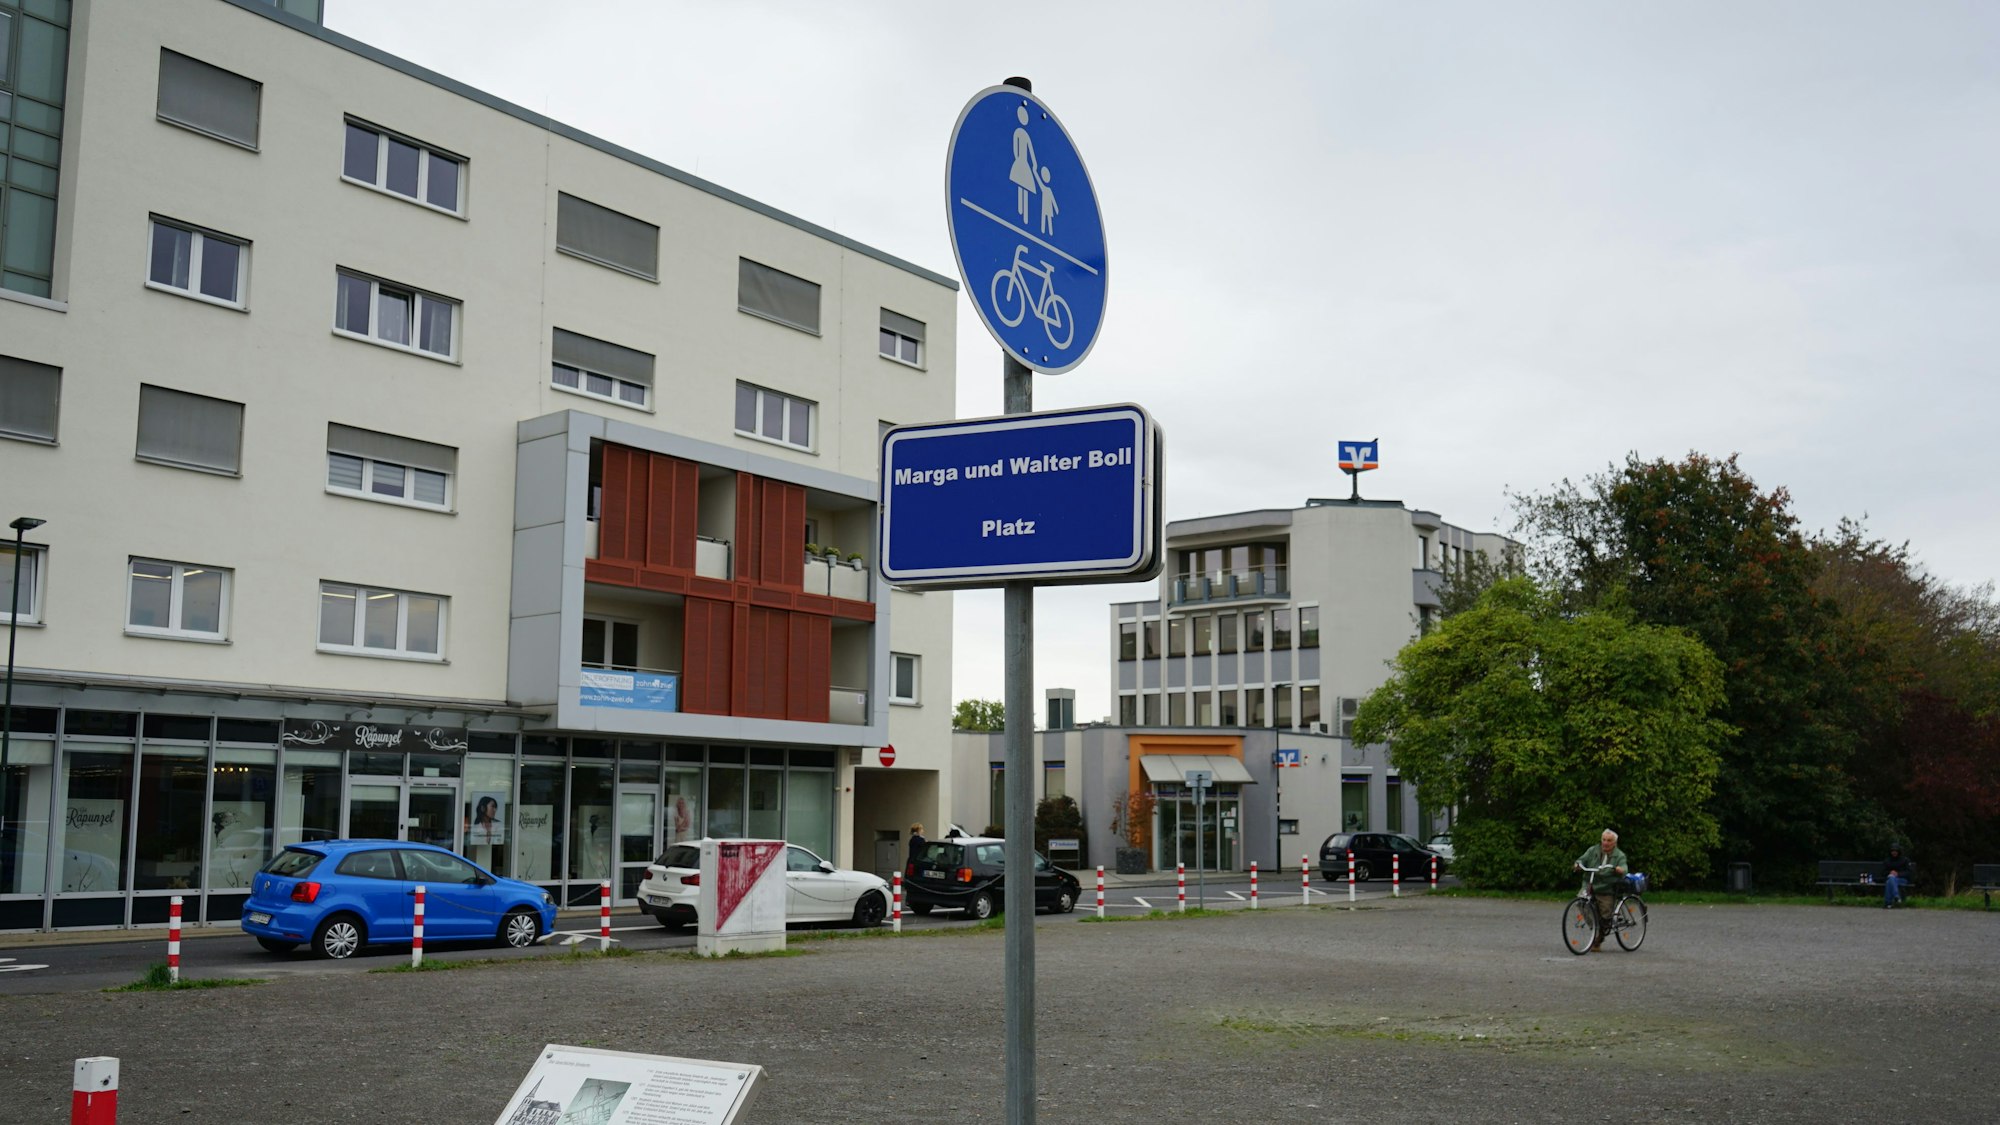 Der Marga- und Walter-Boll-Platz in Sindorf.